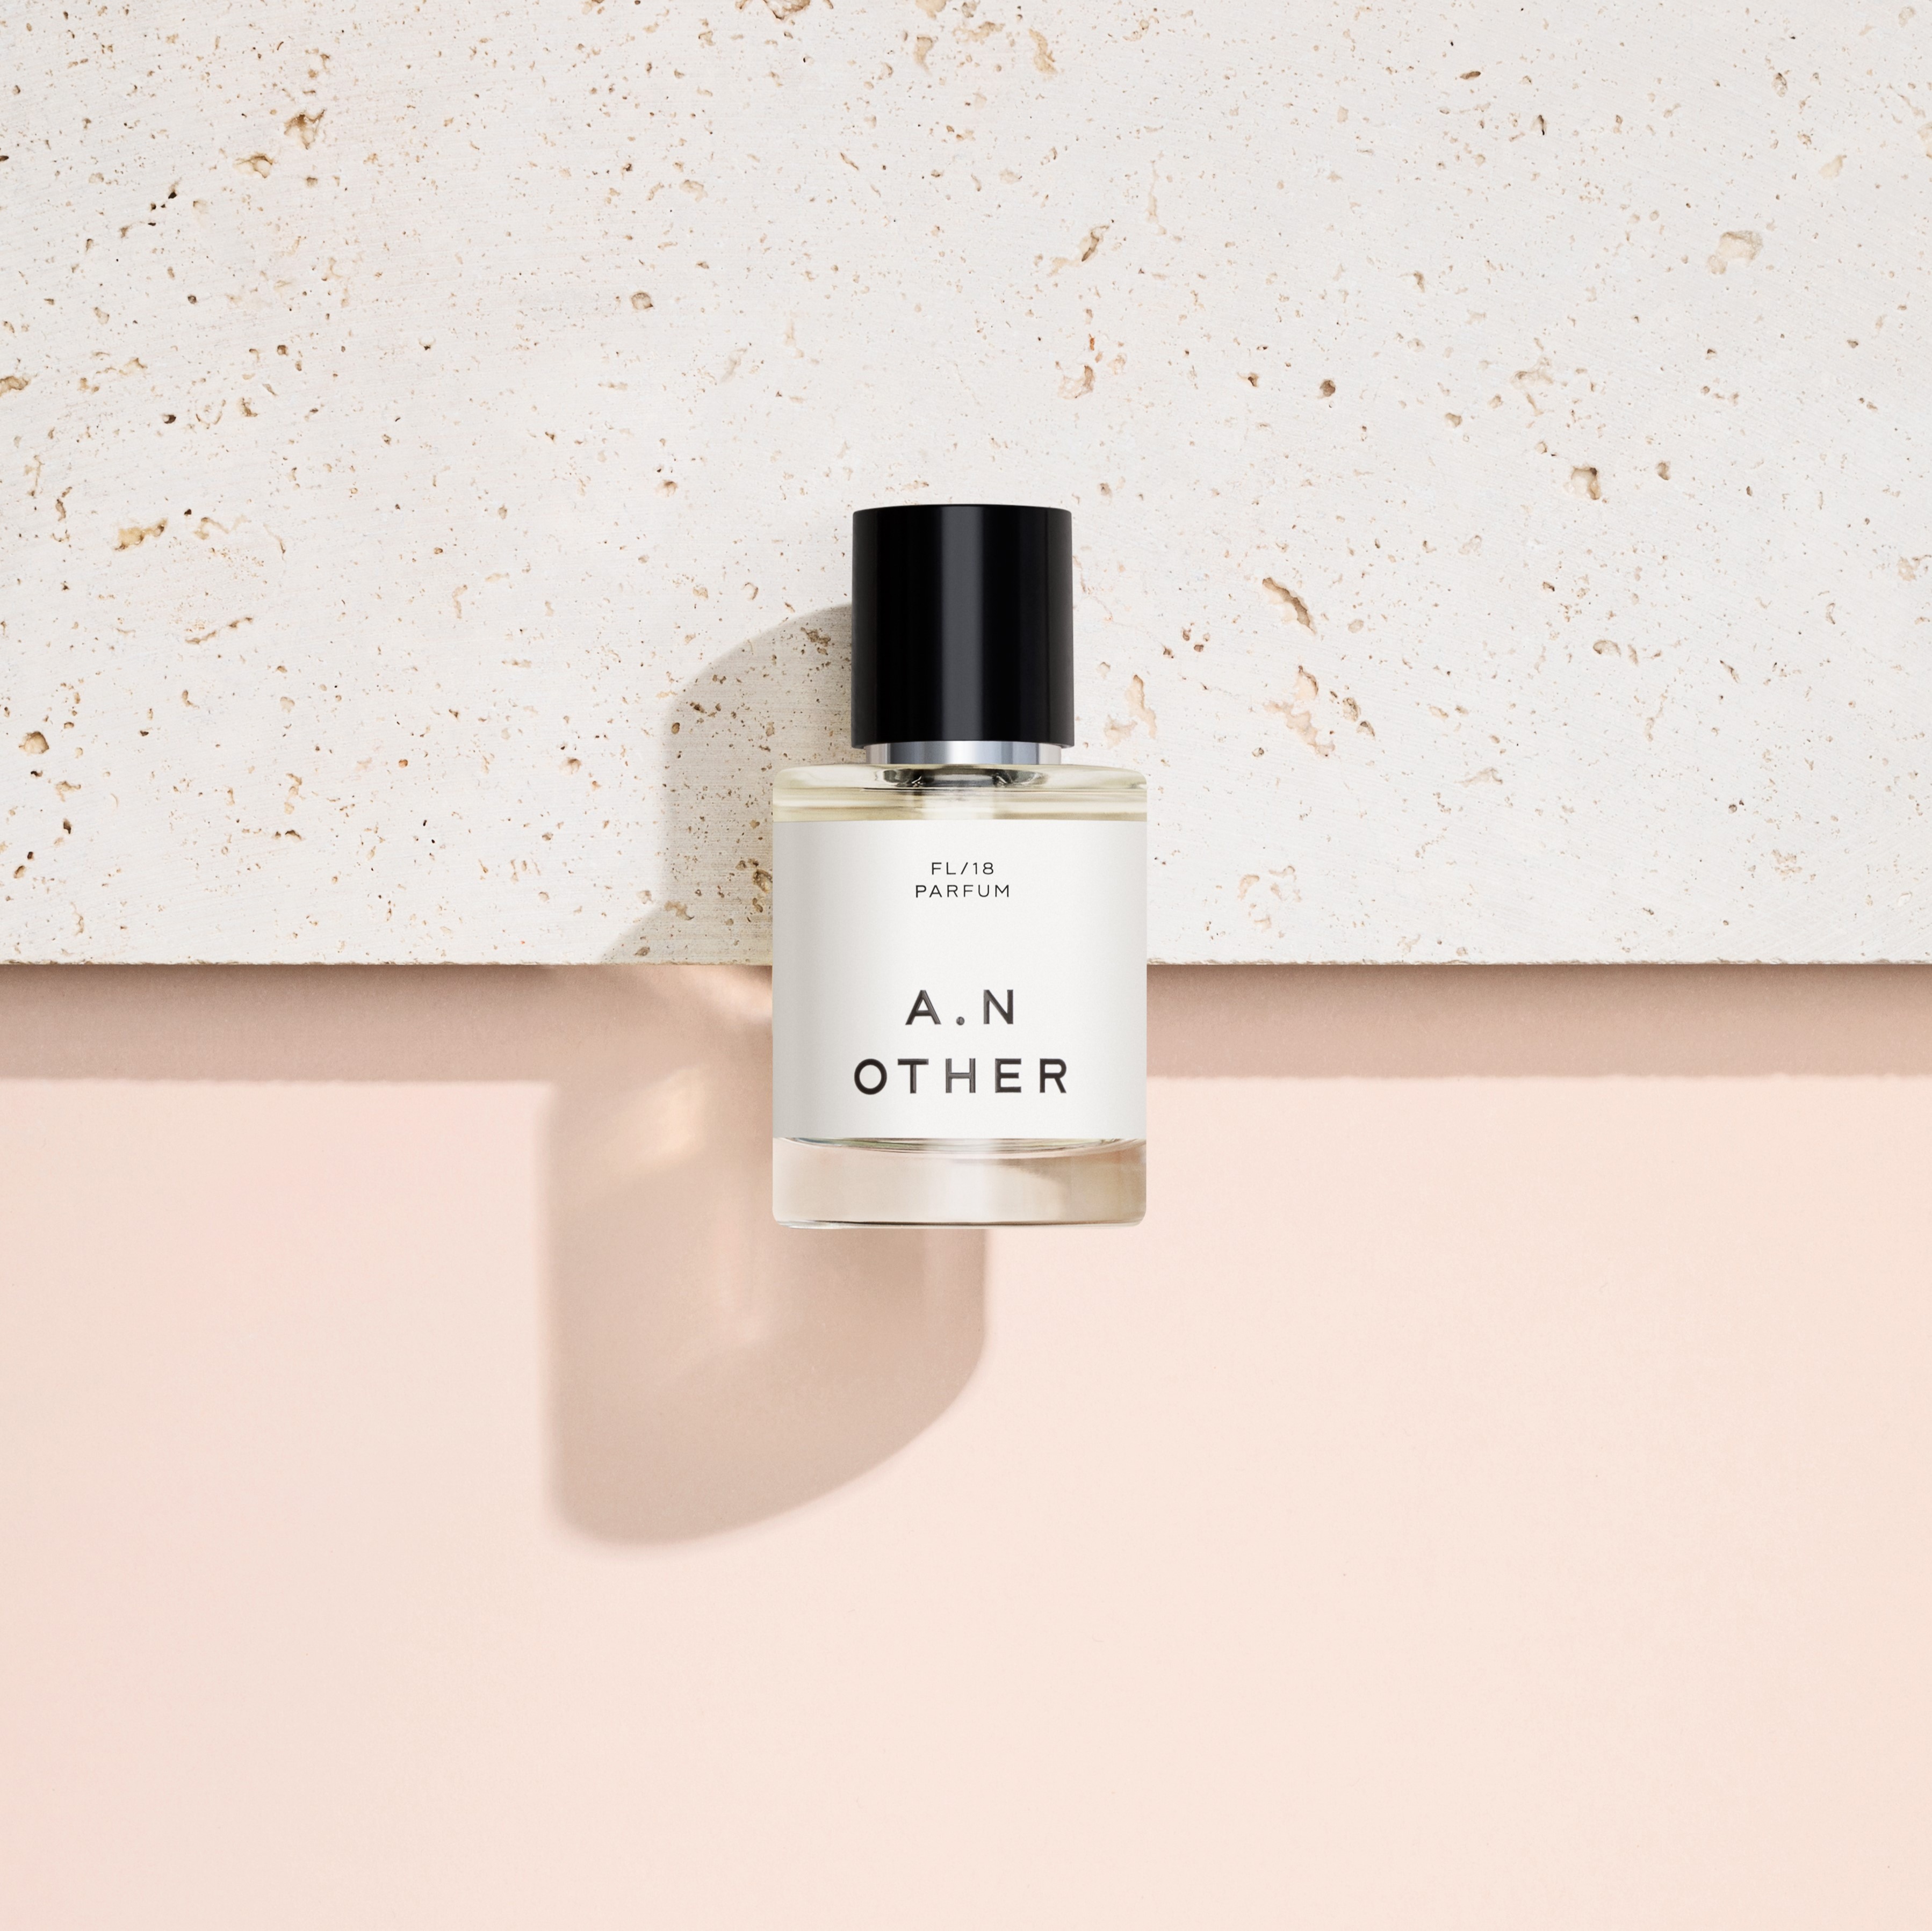 A. N. OTHER FL/2018 Parfum 5106